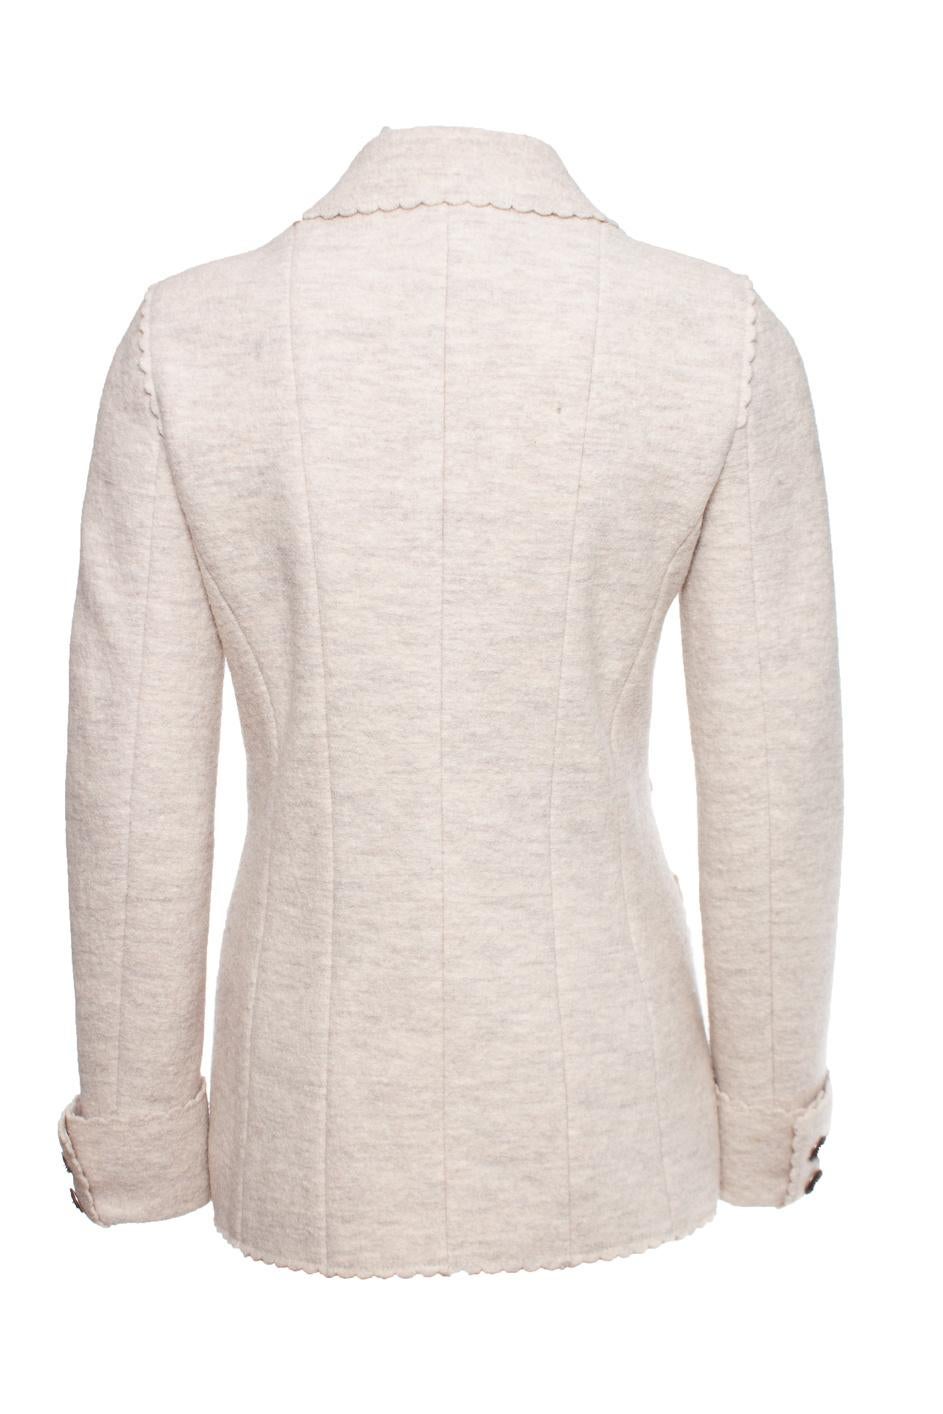 Chanel 9K$ Runway Paris / Dallas Beige Tweed Jacket For Sale 14